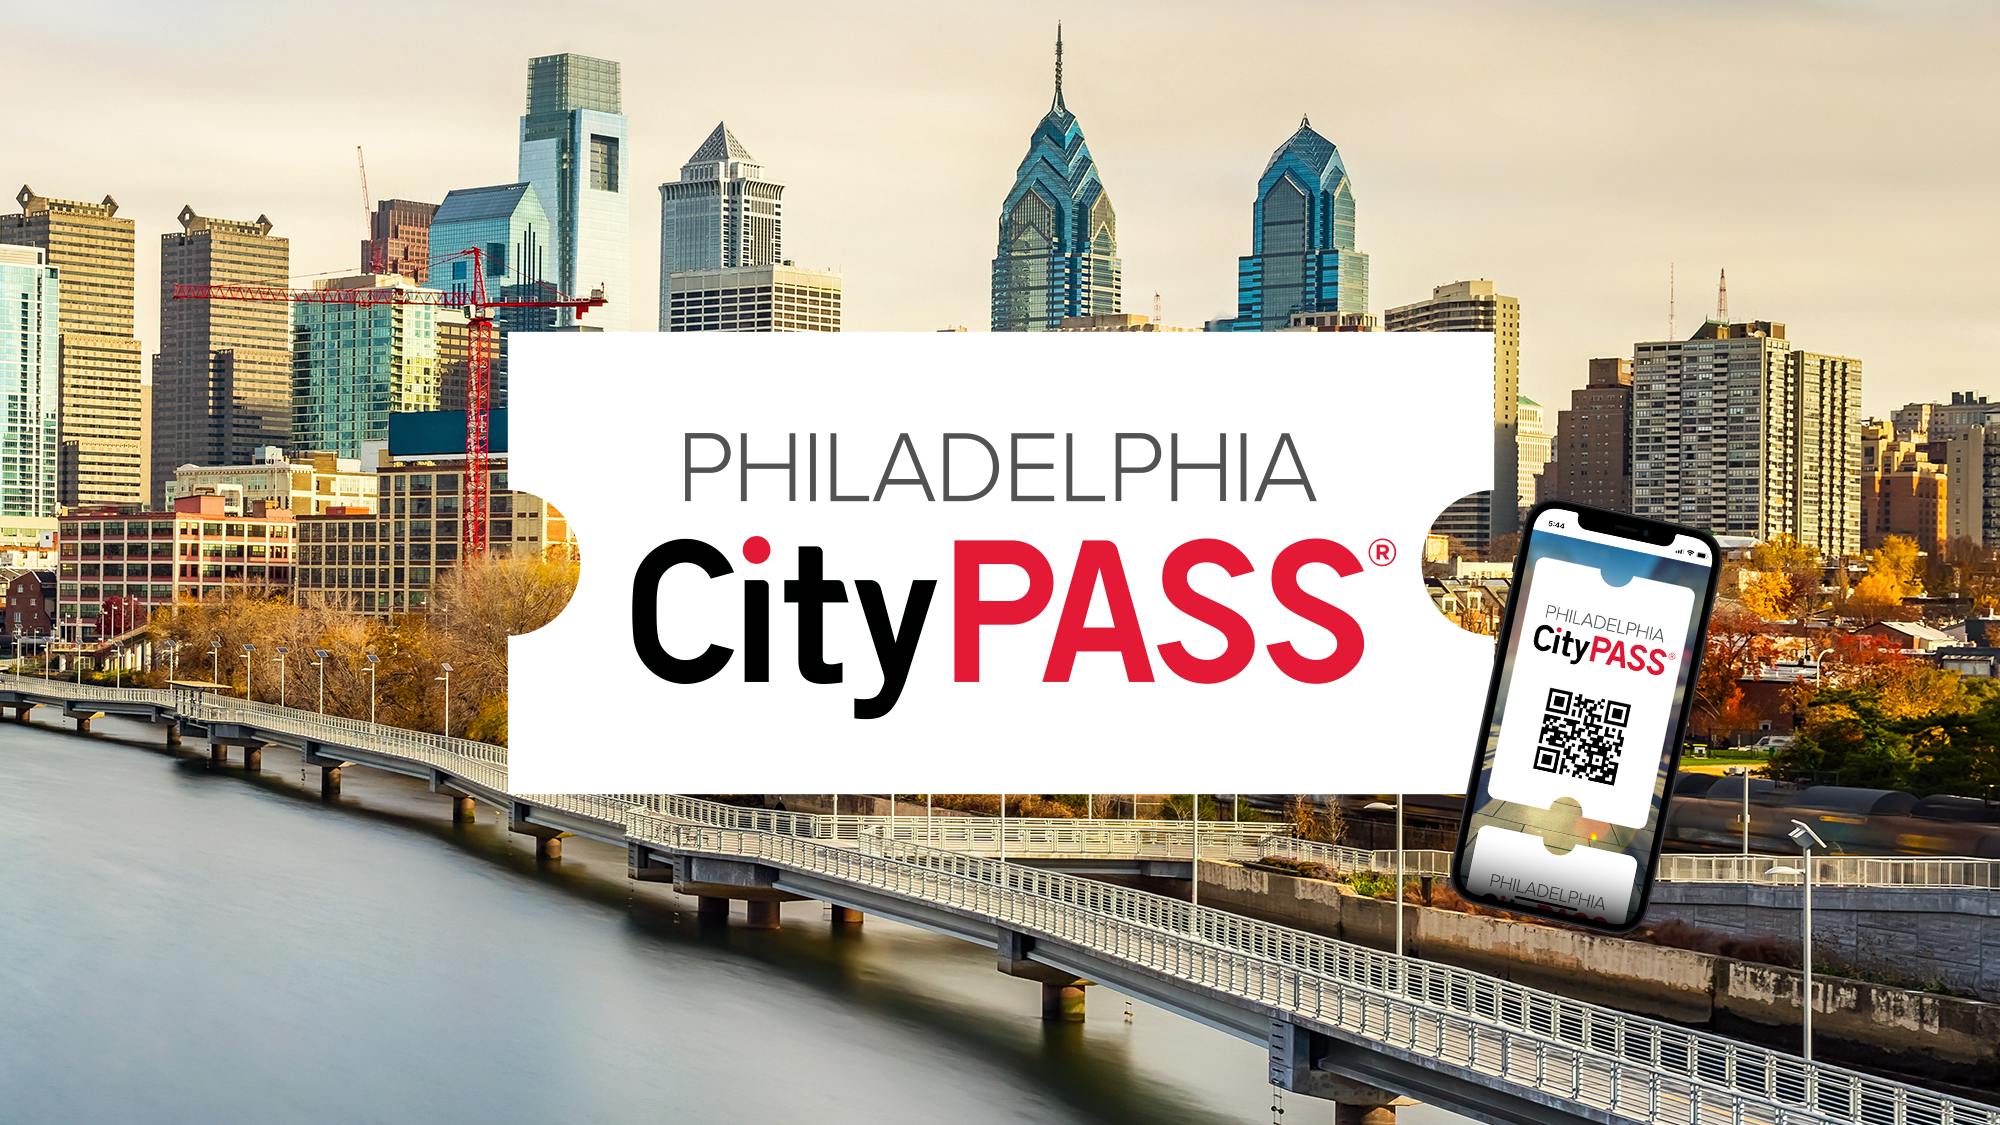 Philadelphia CityPASS®